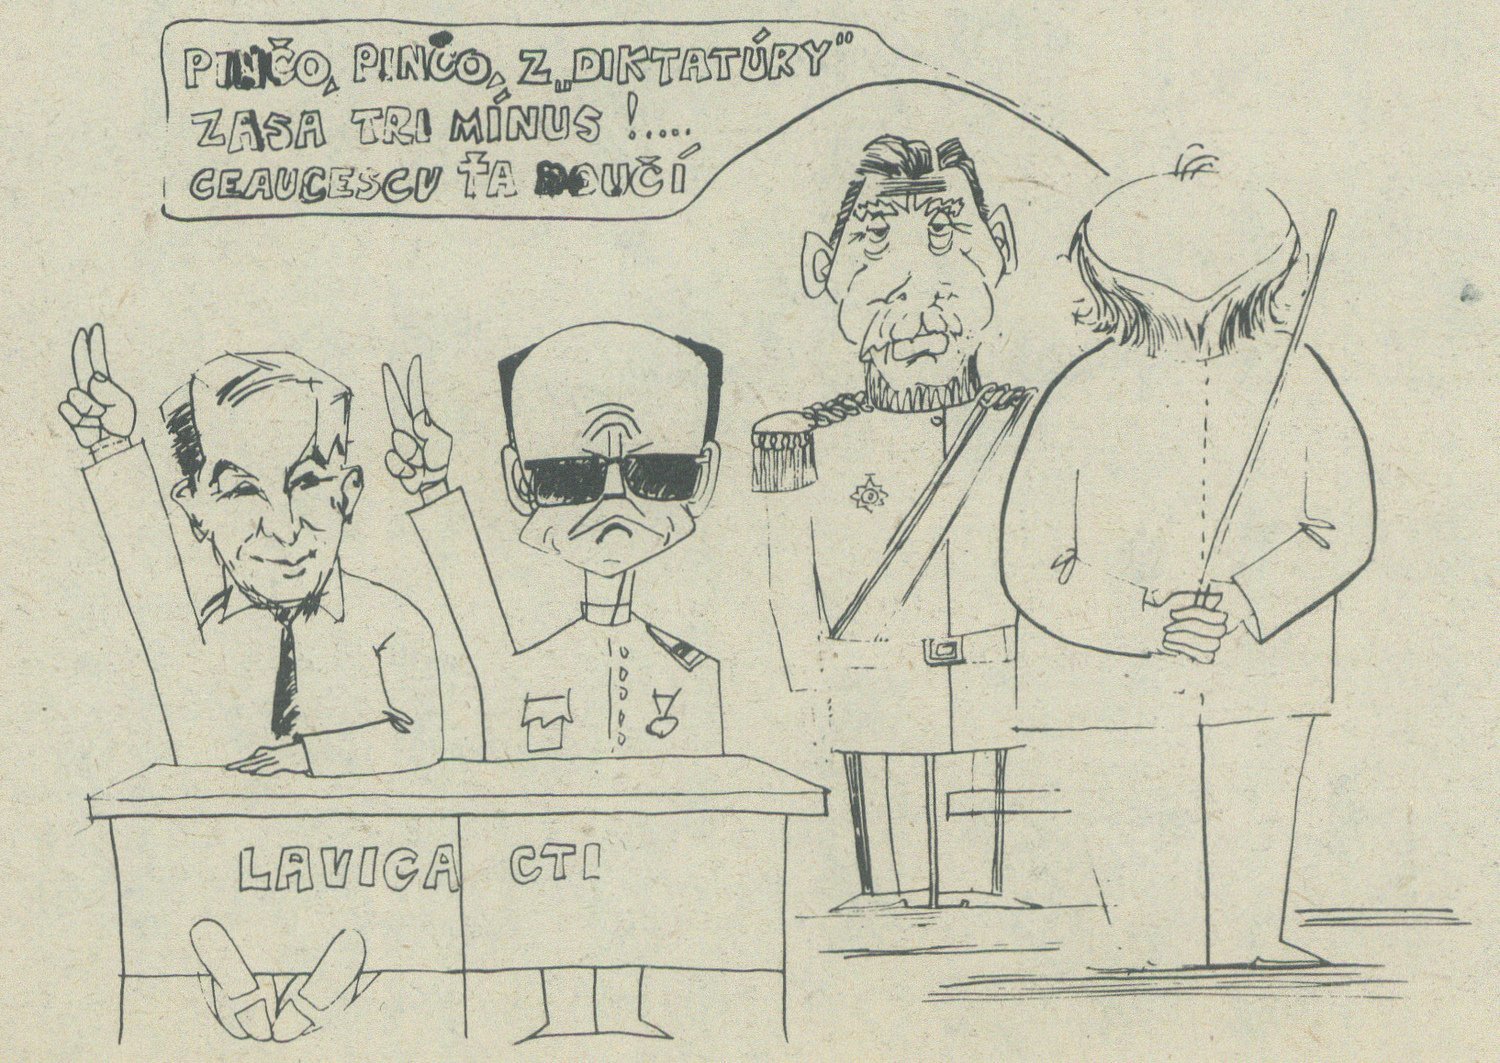 Ceaucescu ťa doučí, karikatúra v časopise Zmena. 1990. Univerzitná knižnica v Bratislave